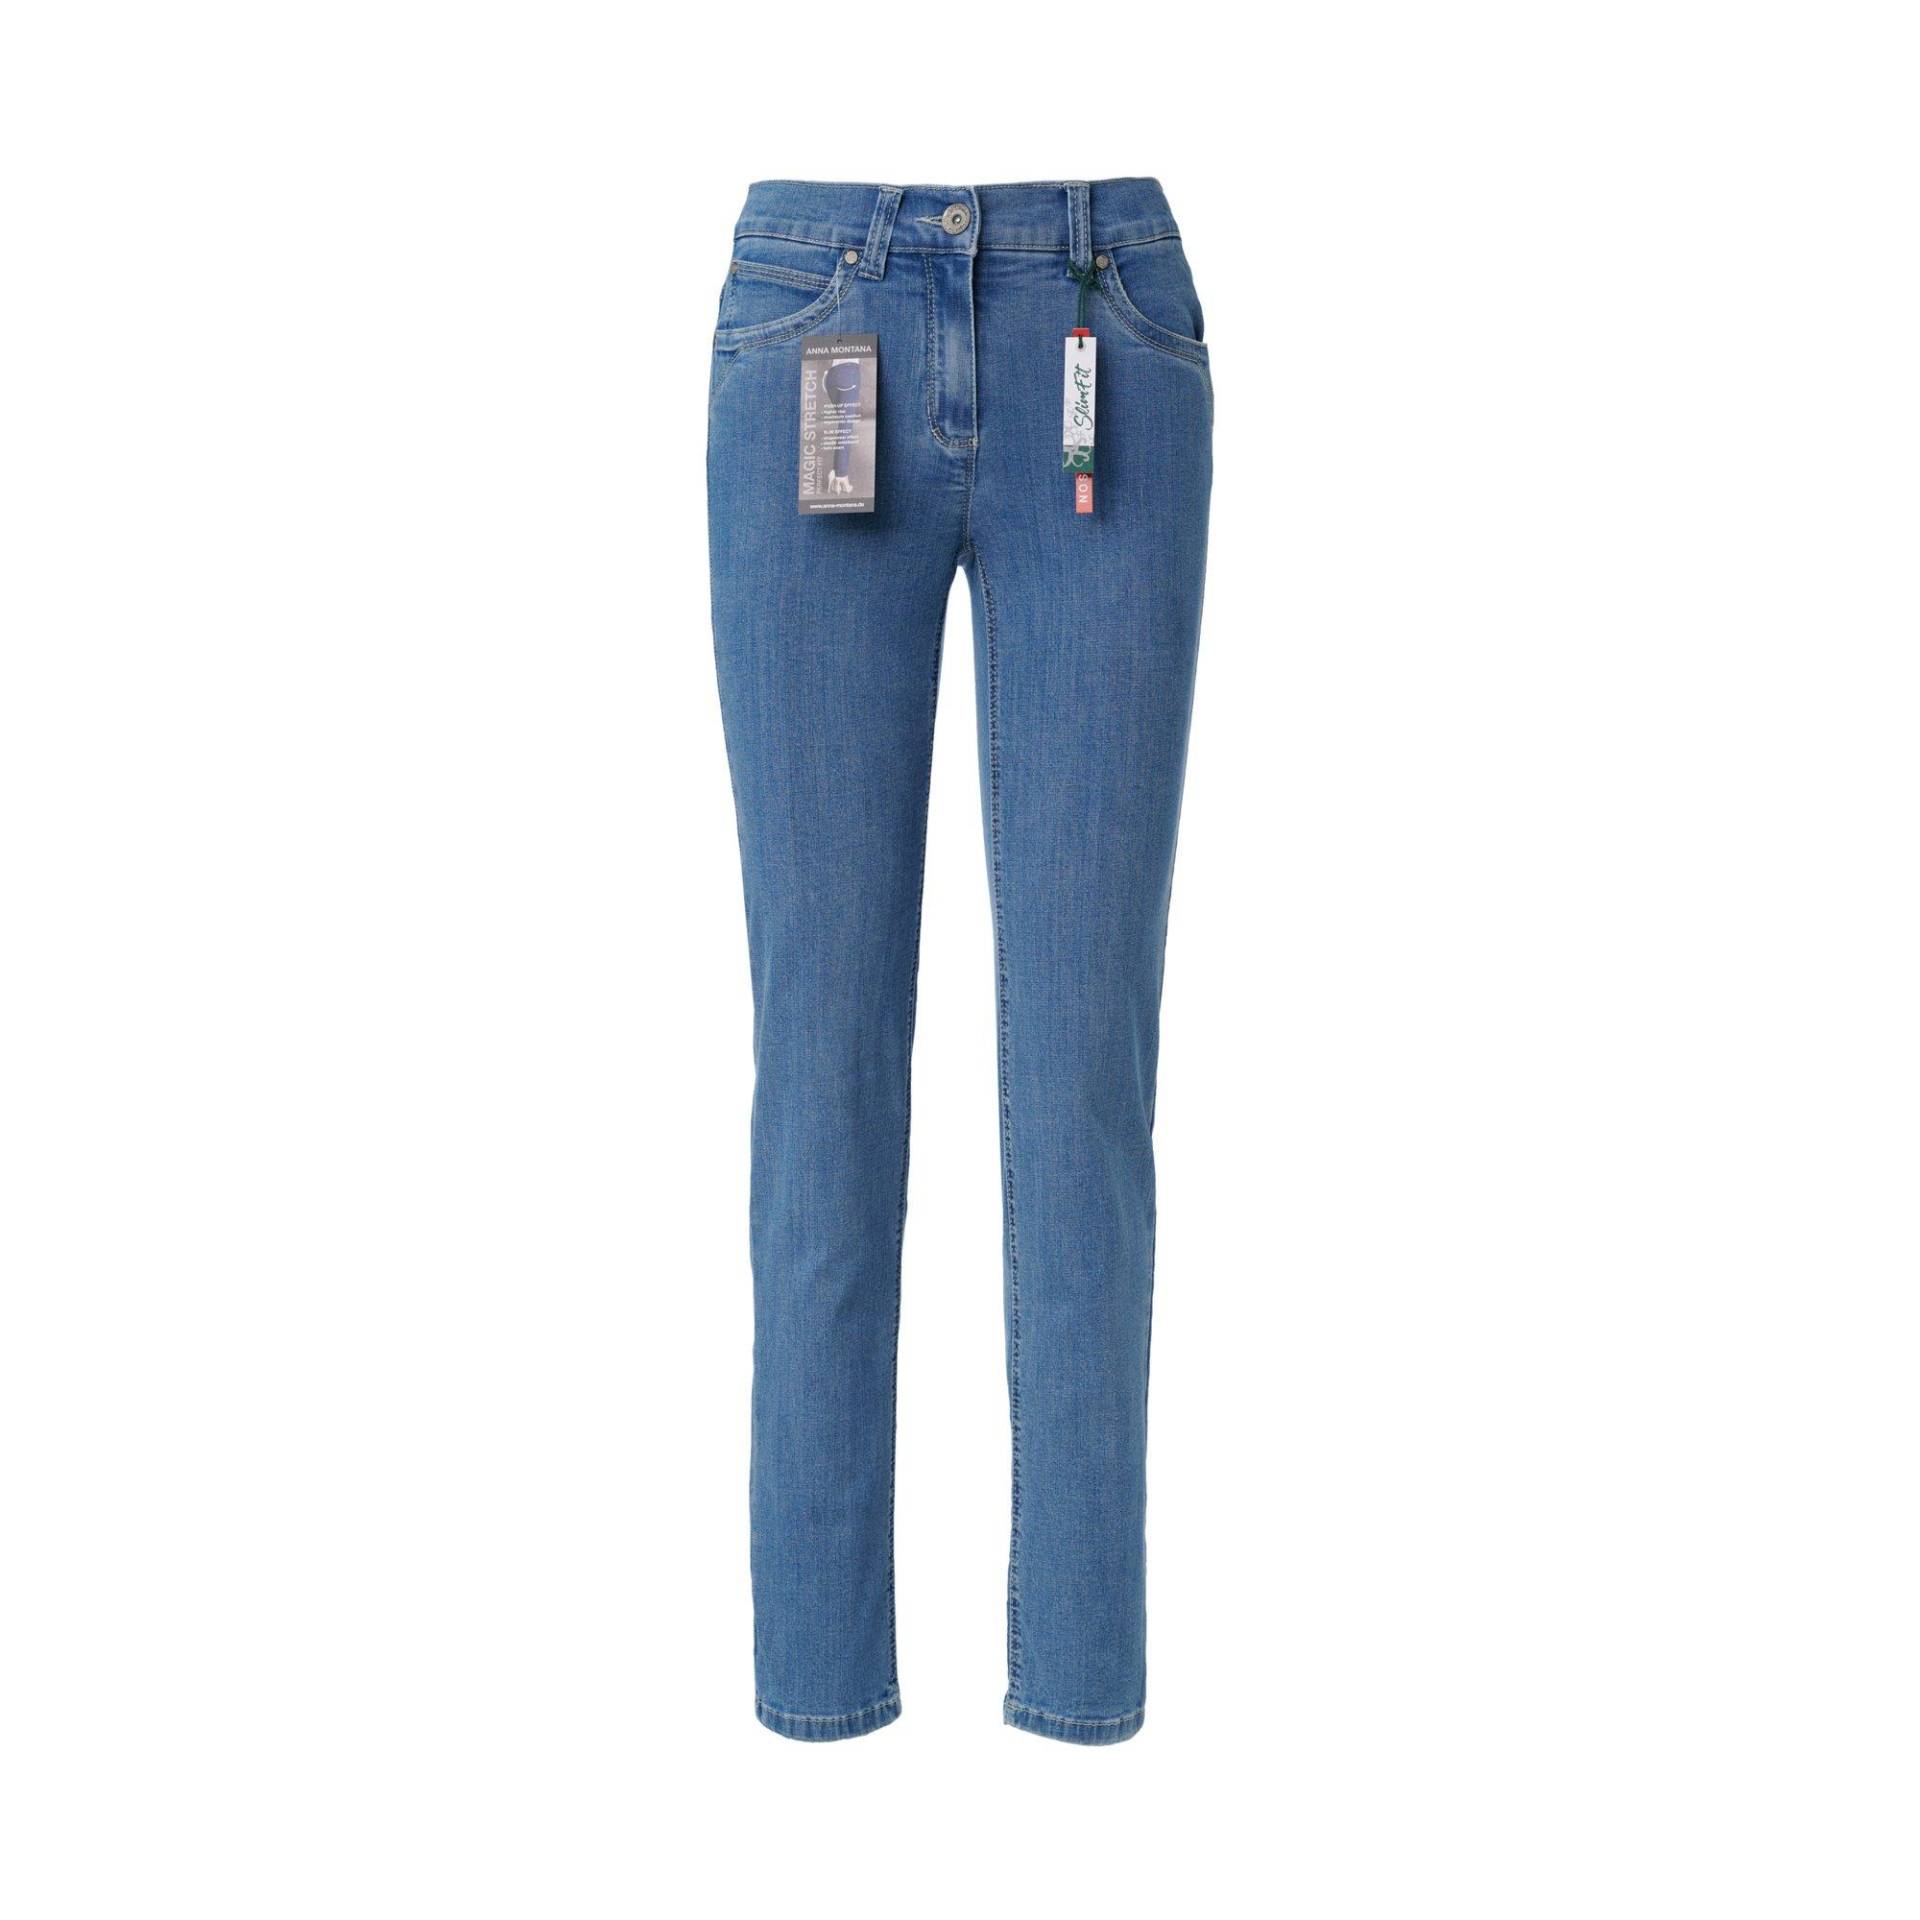 Jeans, Slim Fit Damen Bleached Blau 42 von ANNA MONTANA